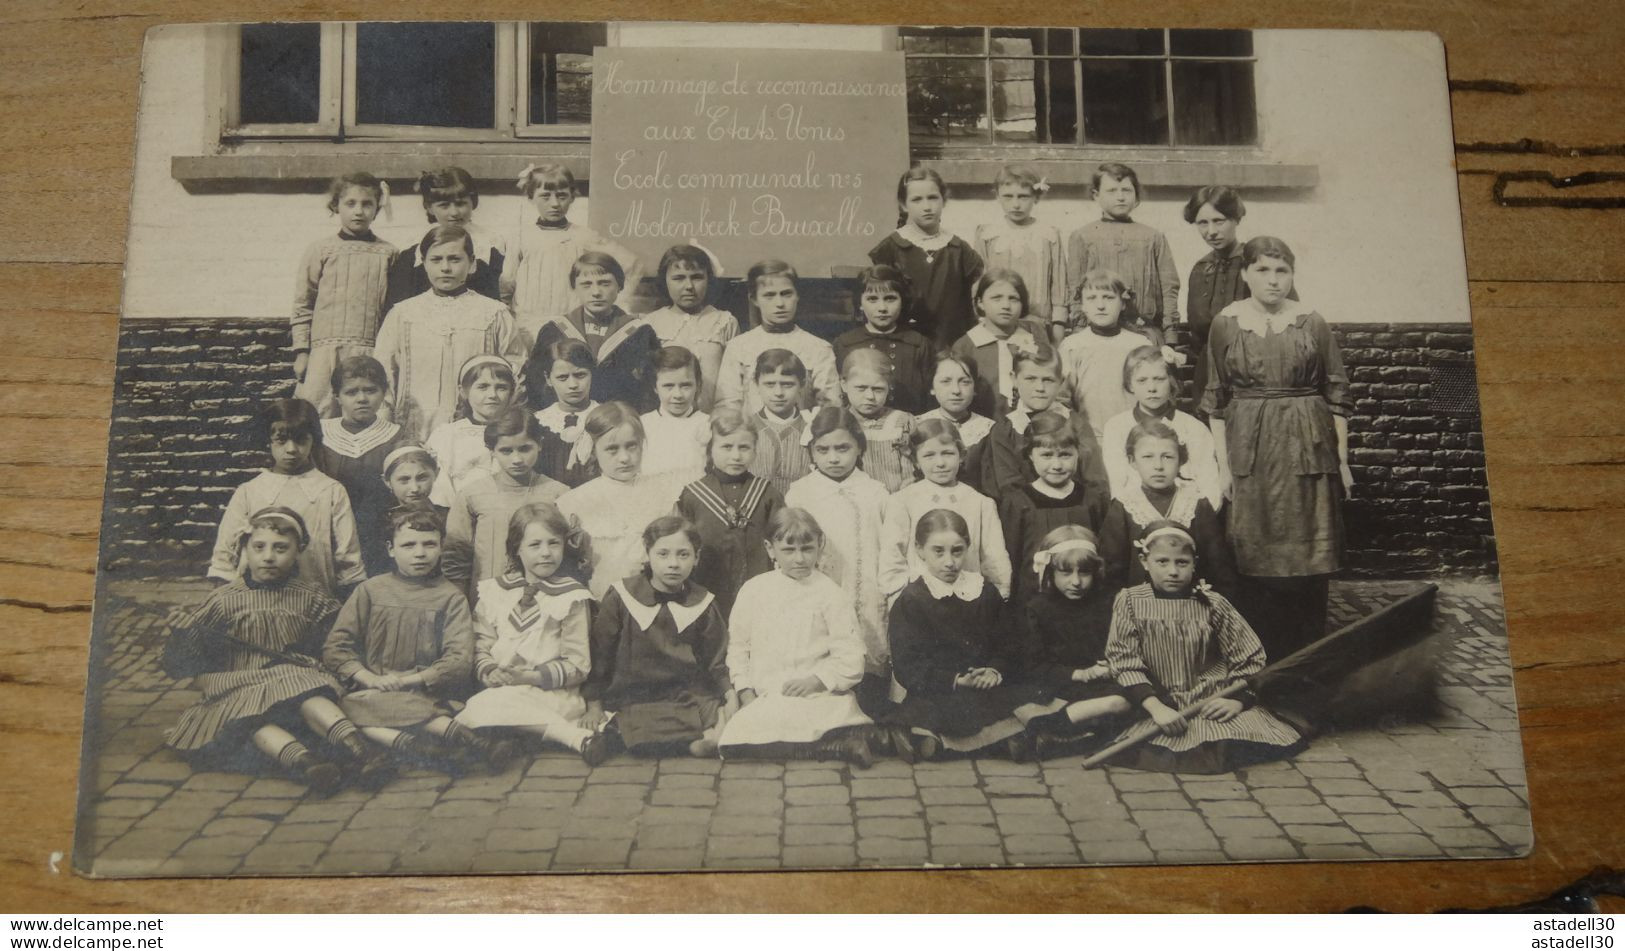 WWI BELGIQUE : Carte Photo Ecole Communale MOLENBEEK, Hommage USA - 1914-1915  ................ 13762 - St-Jans-Molenbeek - Molenbeek-St-Jean